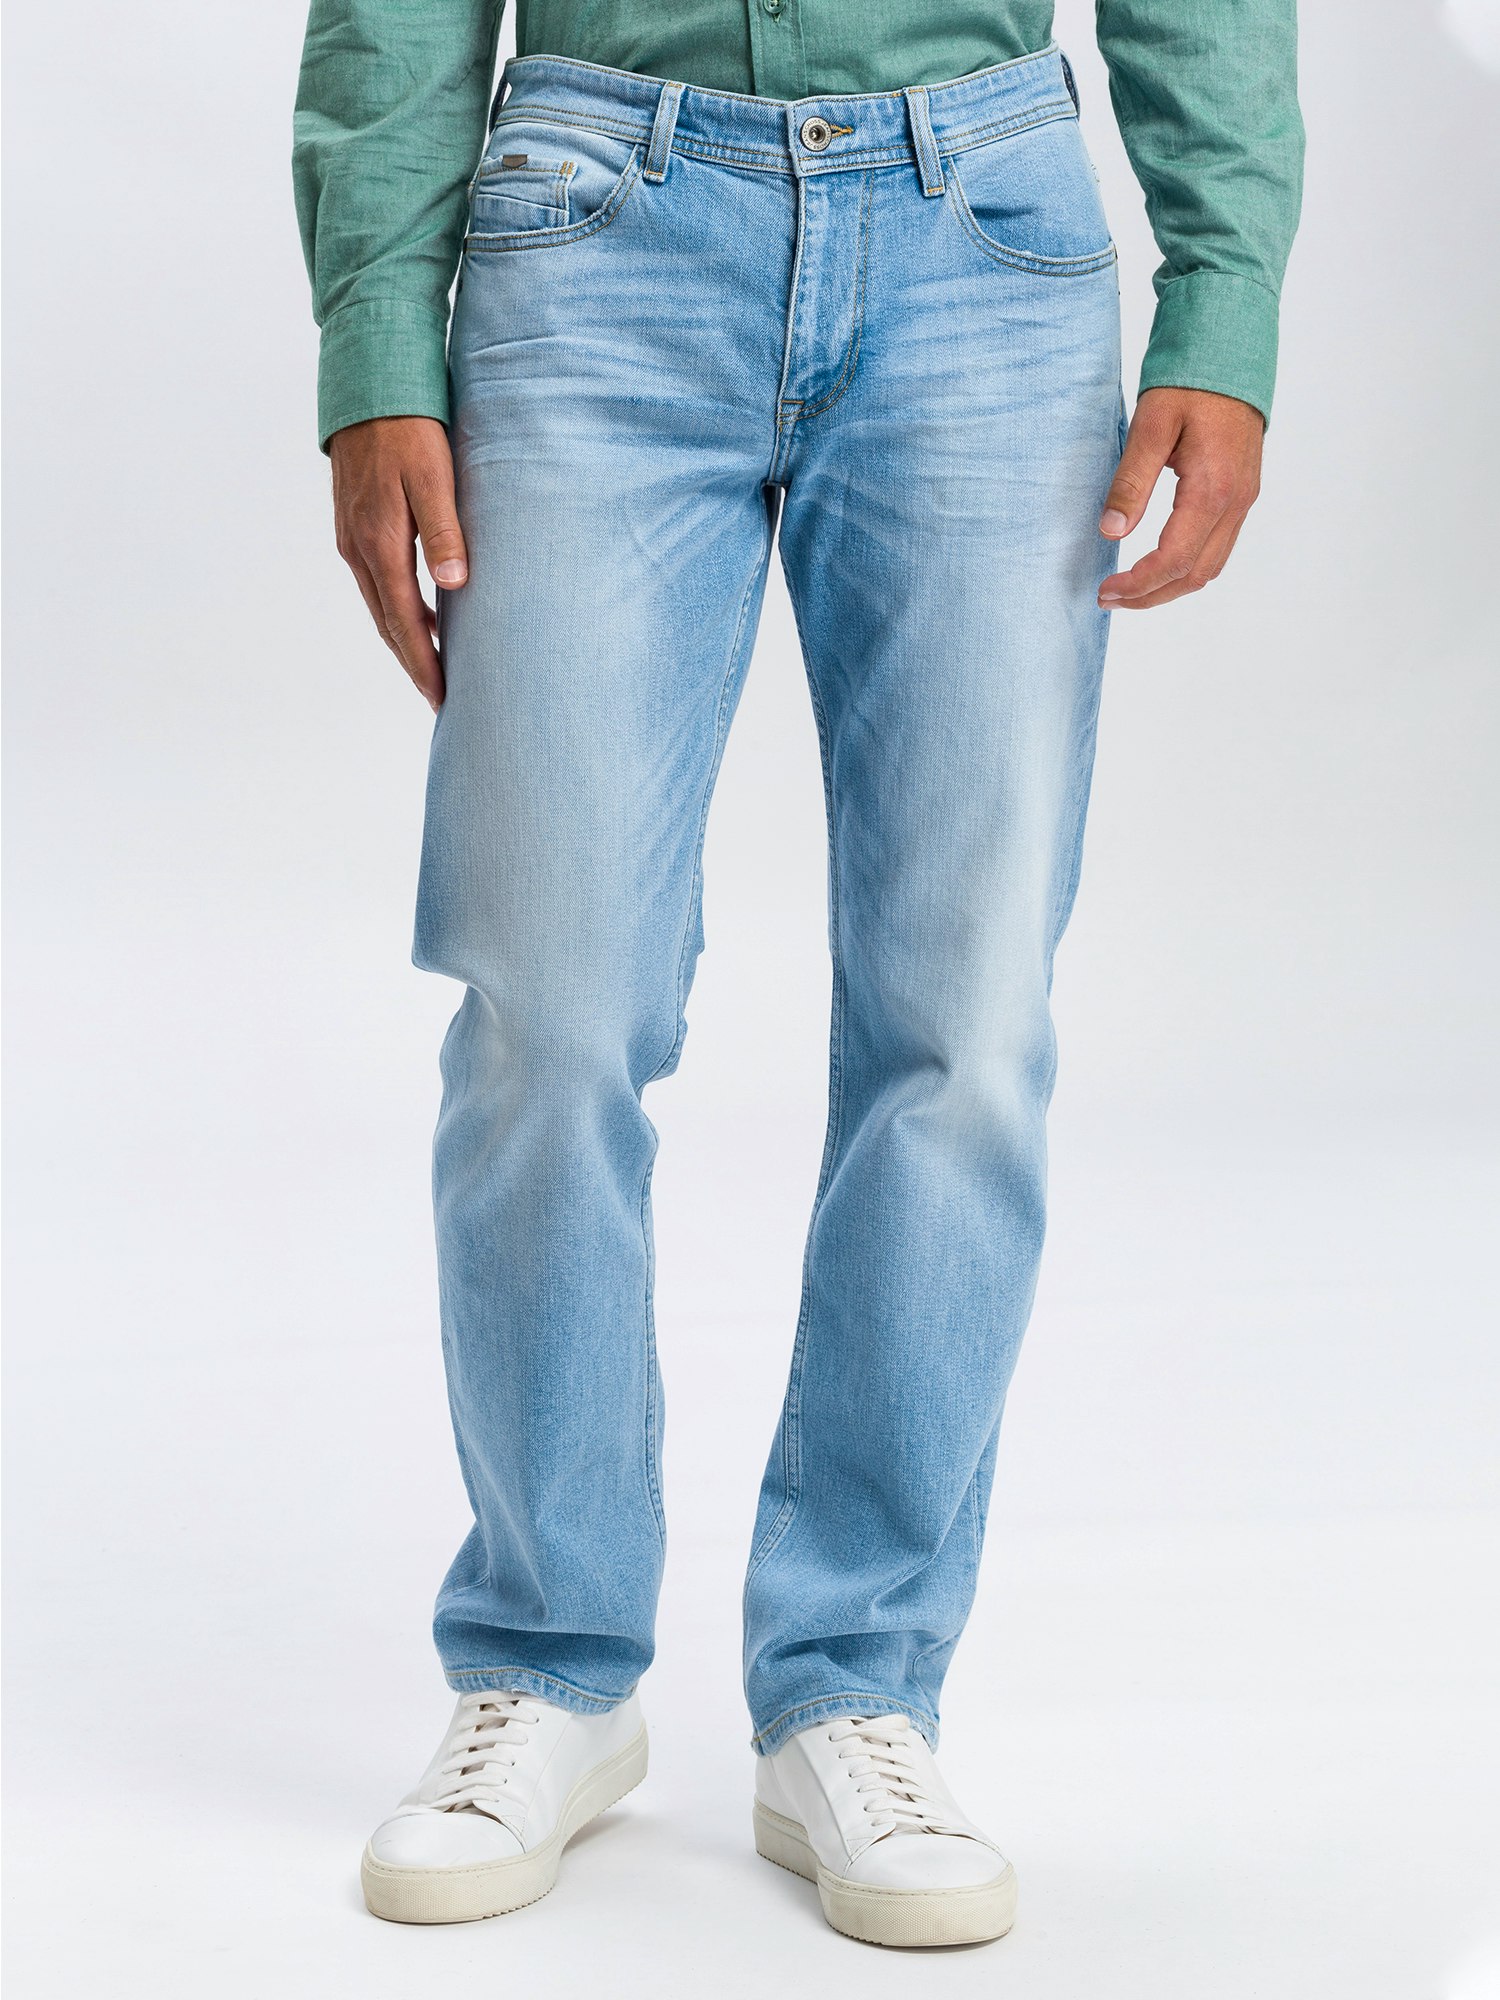 Cross Jeans Antonio 5 Pocket Pants ice blue used